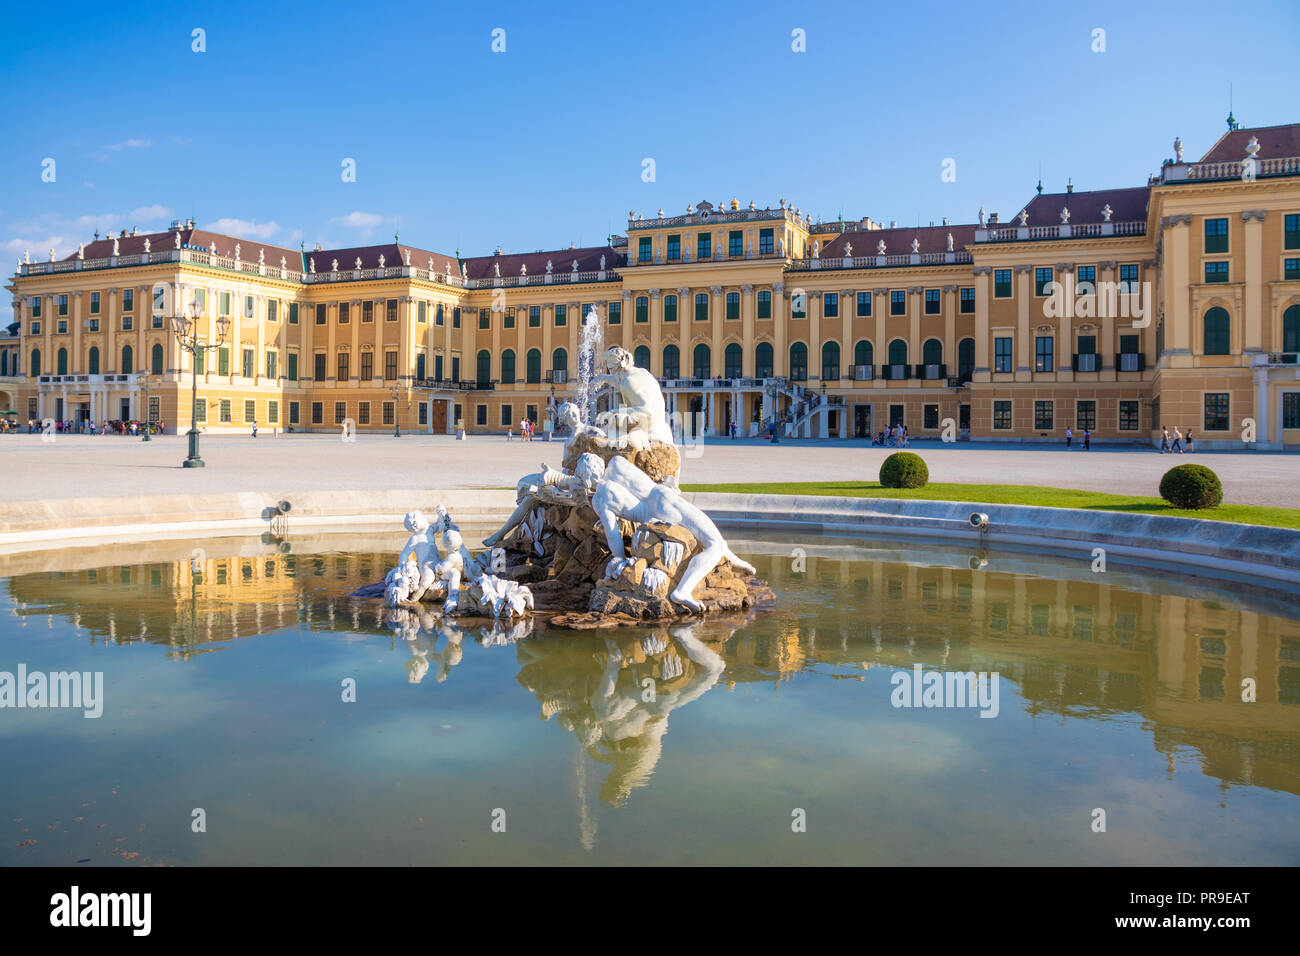 Palacio de Schonbrunn, residencia de verano imperial en Viena, Austria. Foto de stock